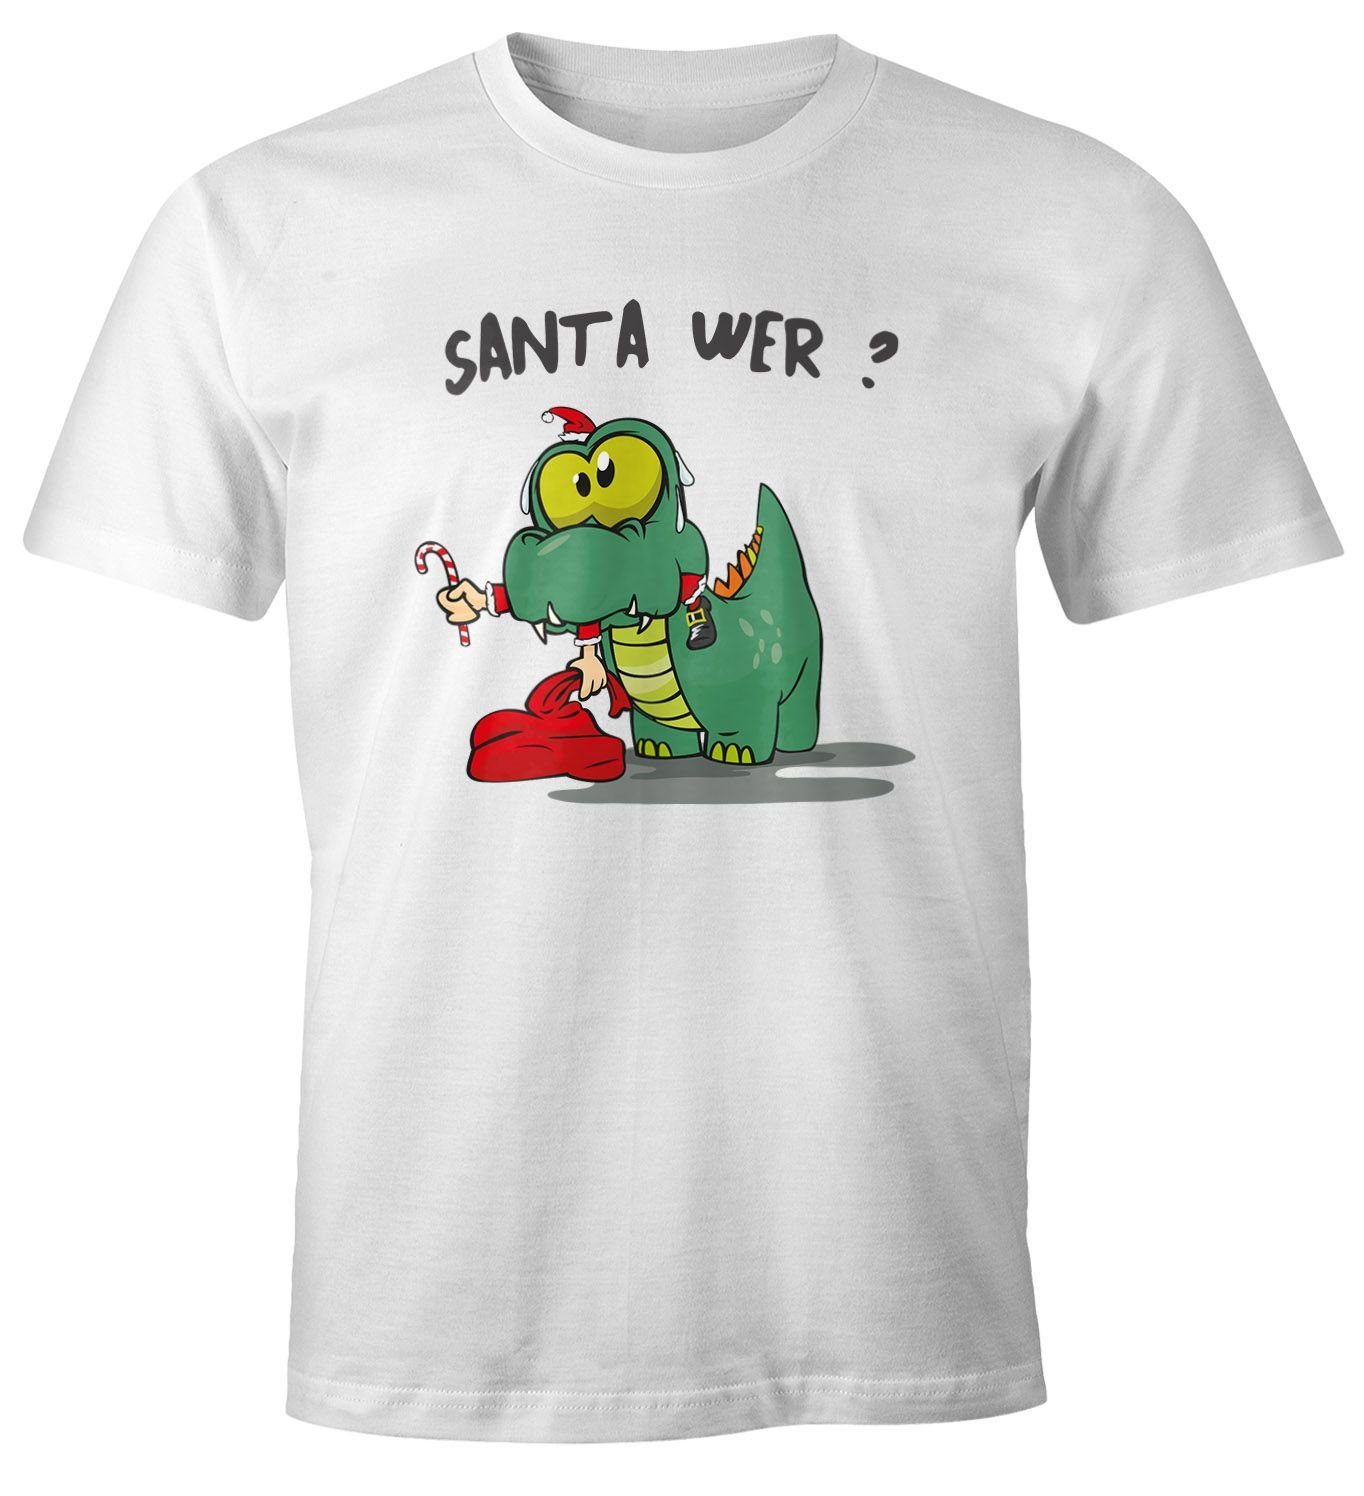 MoonWorks Print-Shirt Herren T-Shirt Fun Motiv Dinosaurier frisst Santa Claus Spruch Santa Wer? Weihnachtsmann Fun-Shirt Moonworks® mit Print